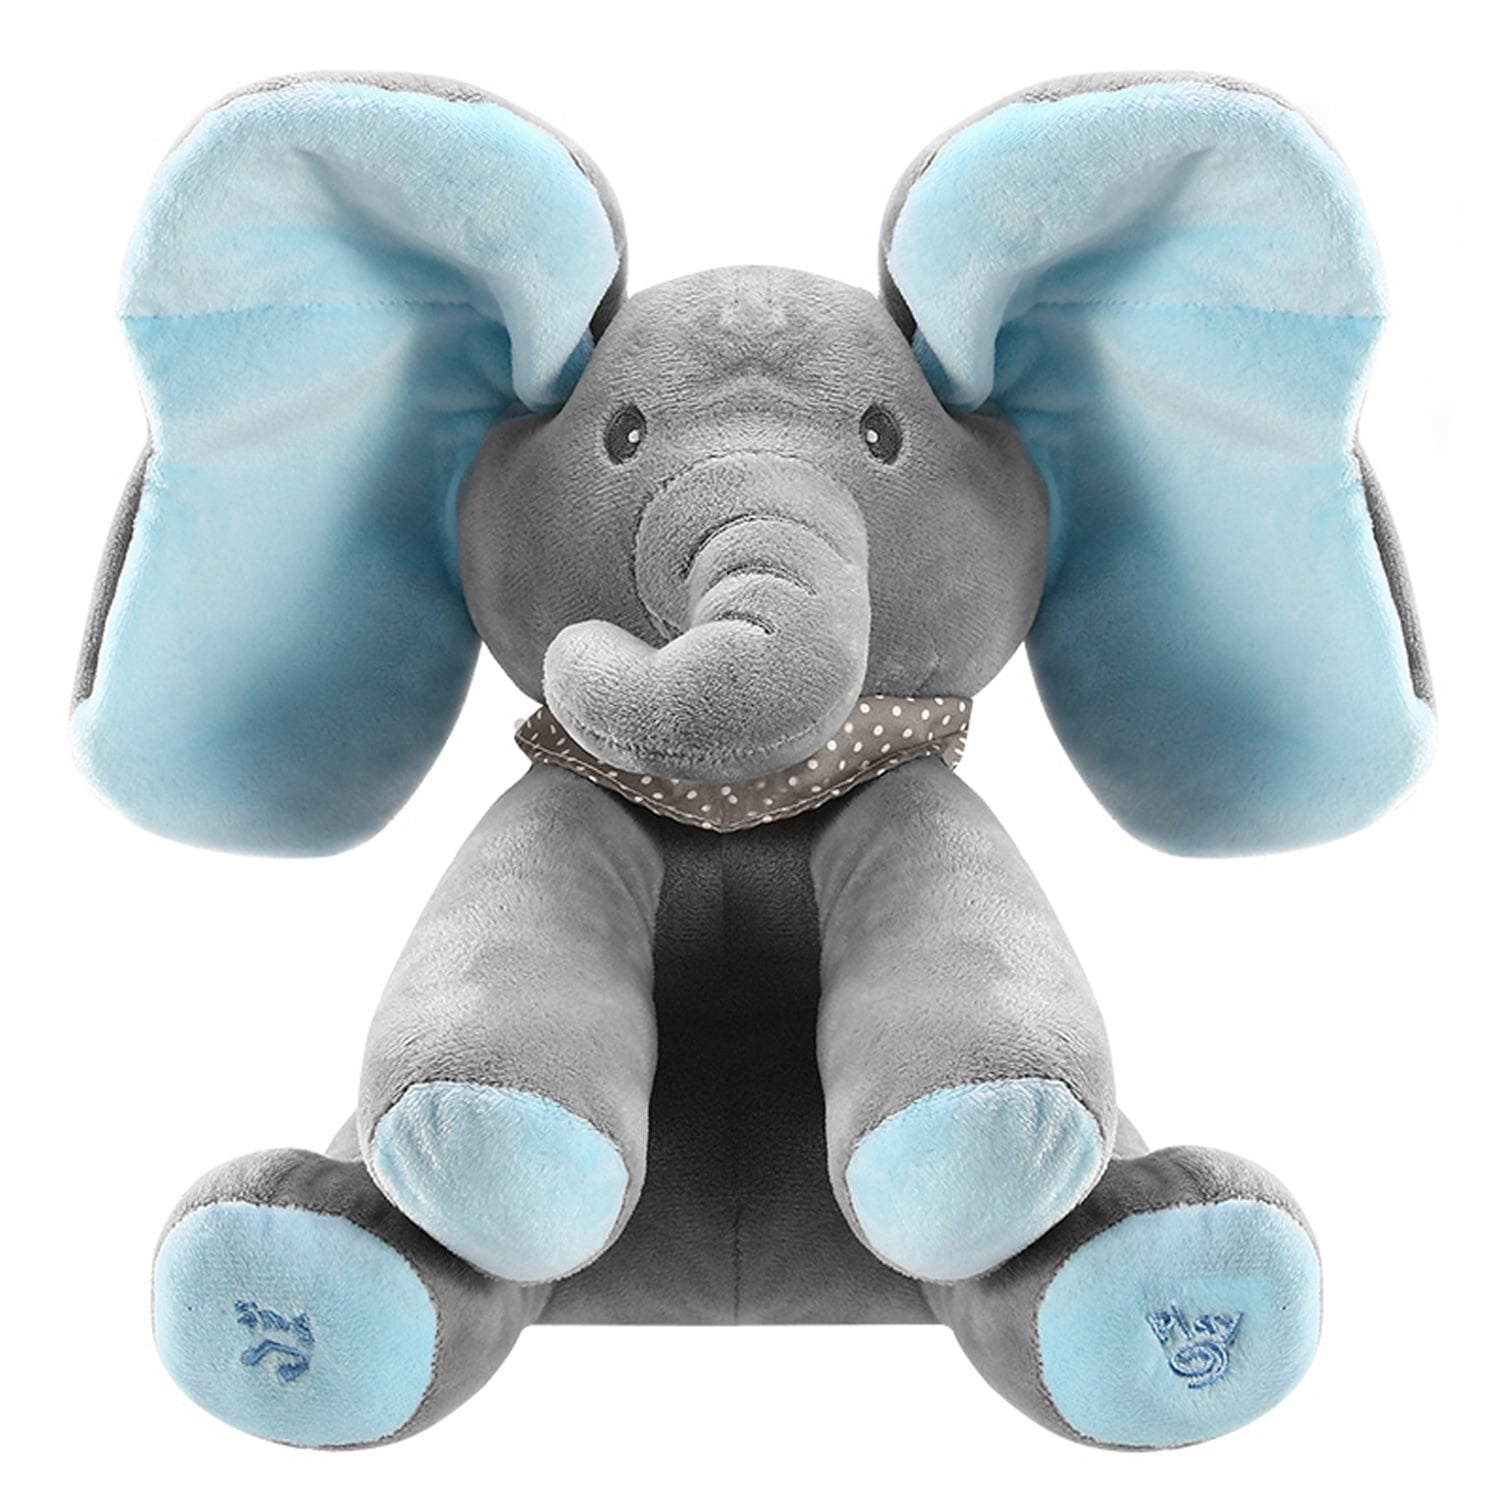 elephant toy singing